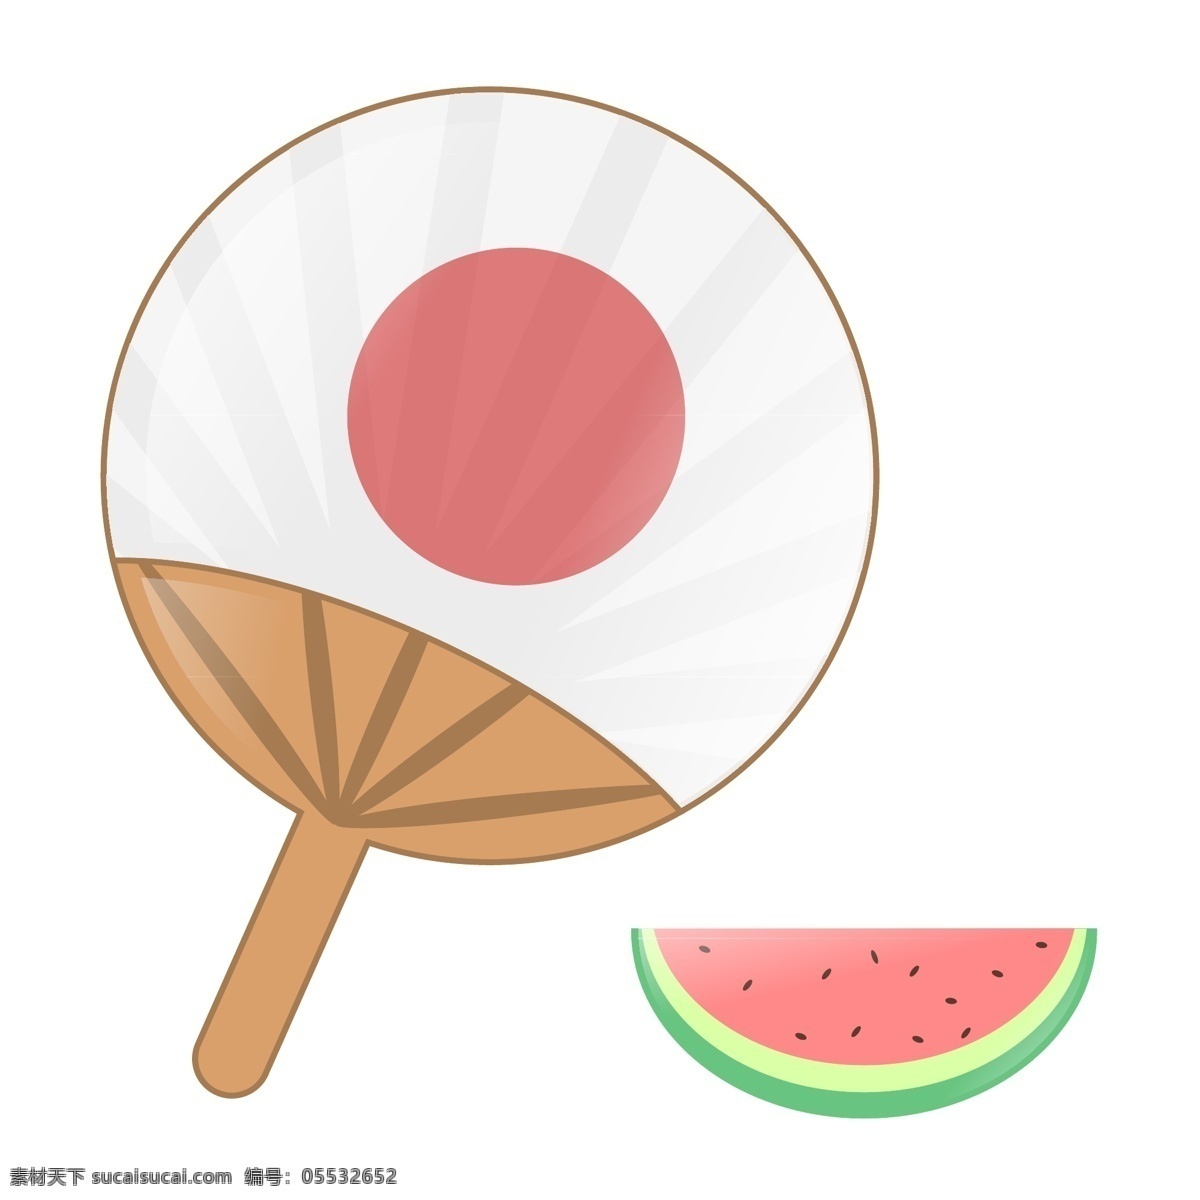 圆形 日本 扇子 插图 夏天的扇子 圆形扇子 漂亮的扇子 卡通扇子 扇子插画 日本扇子 西瓜装饰 解渴的西瓜